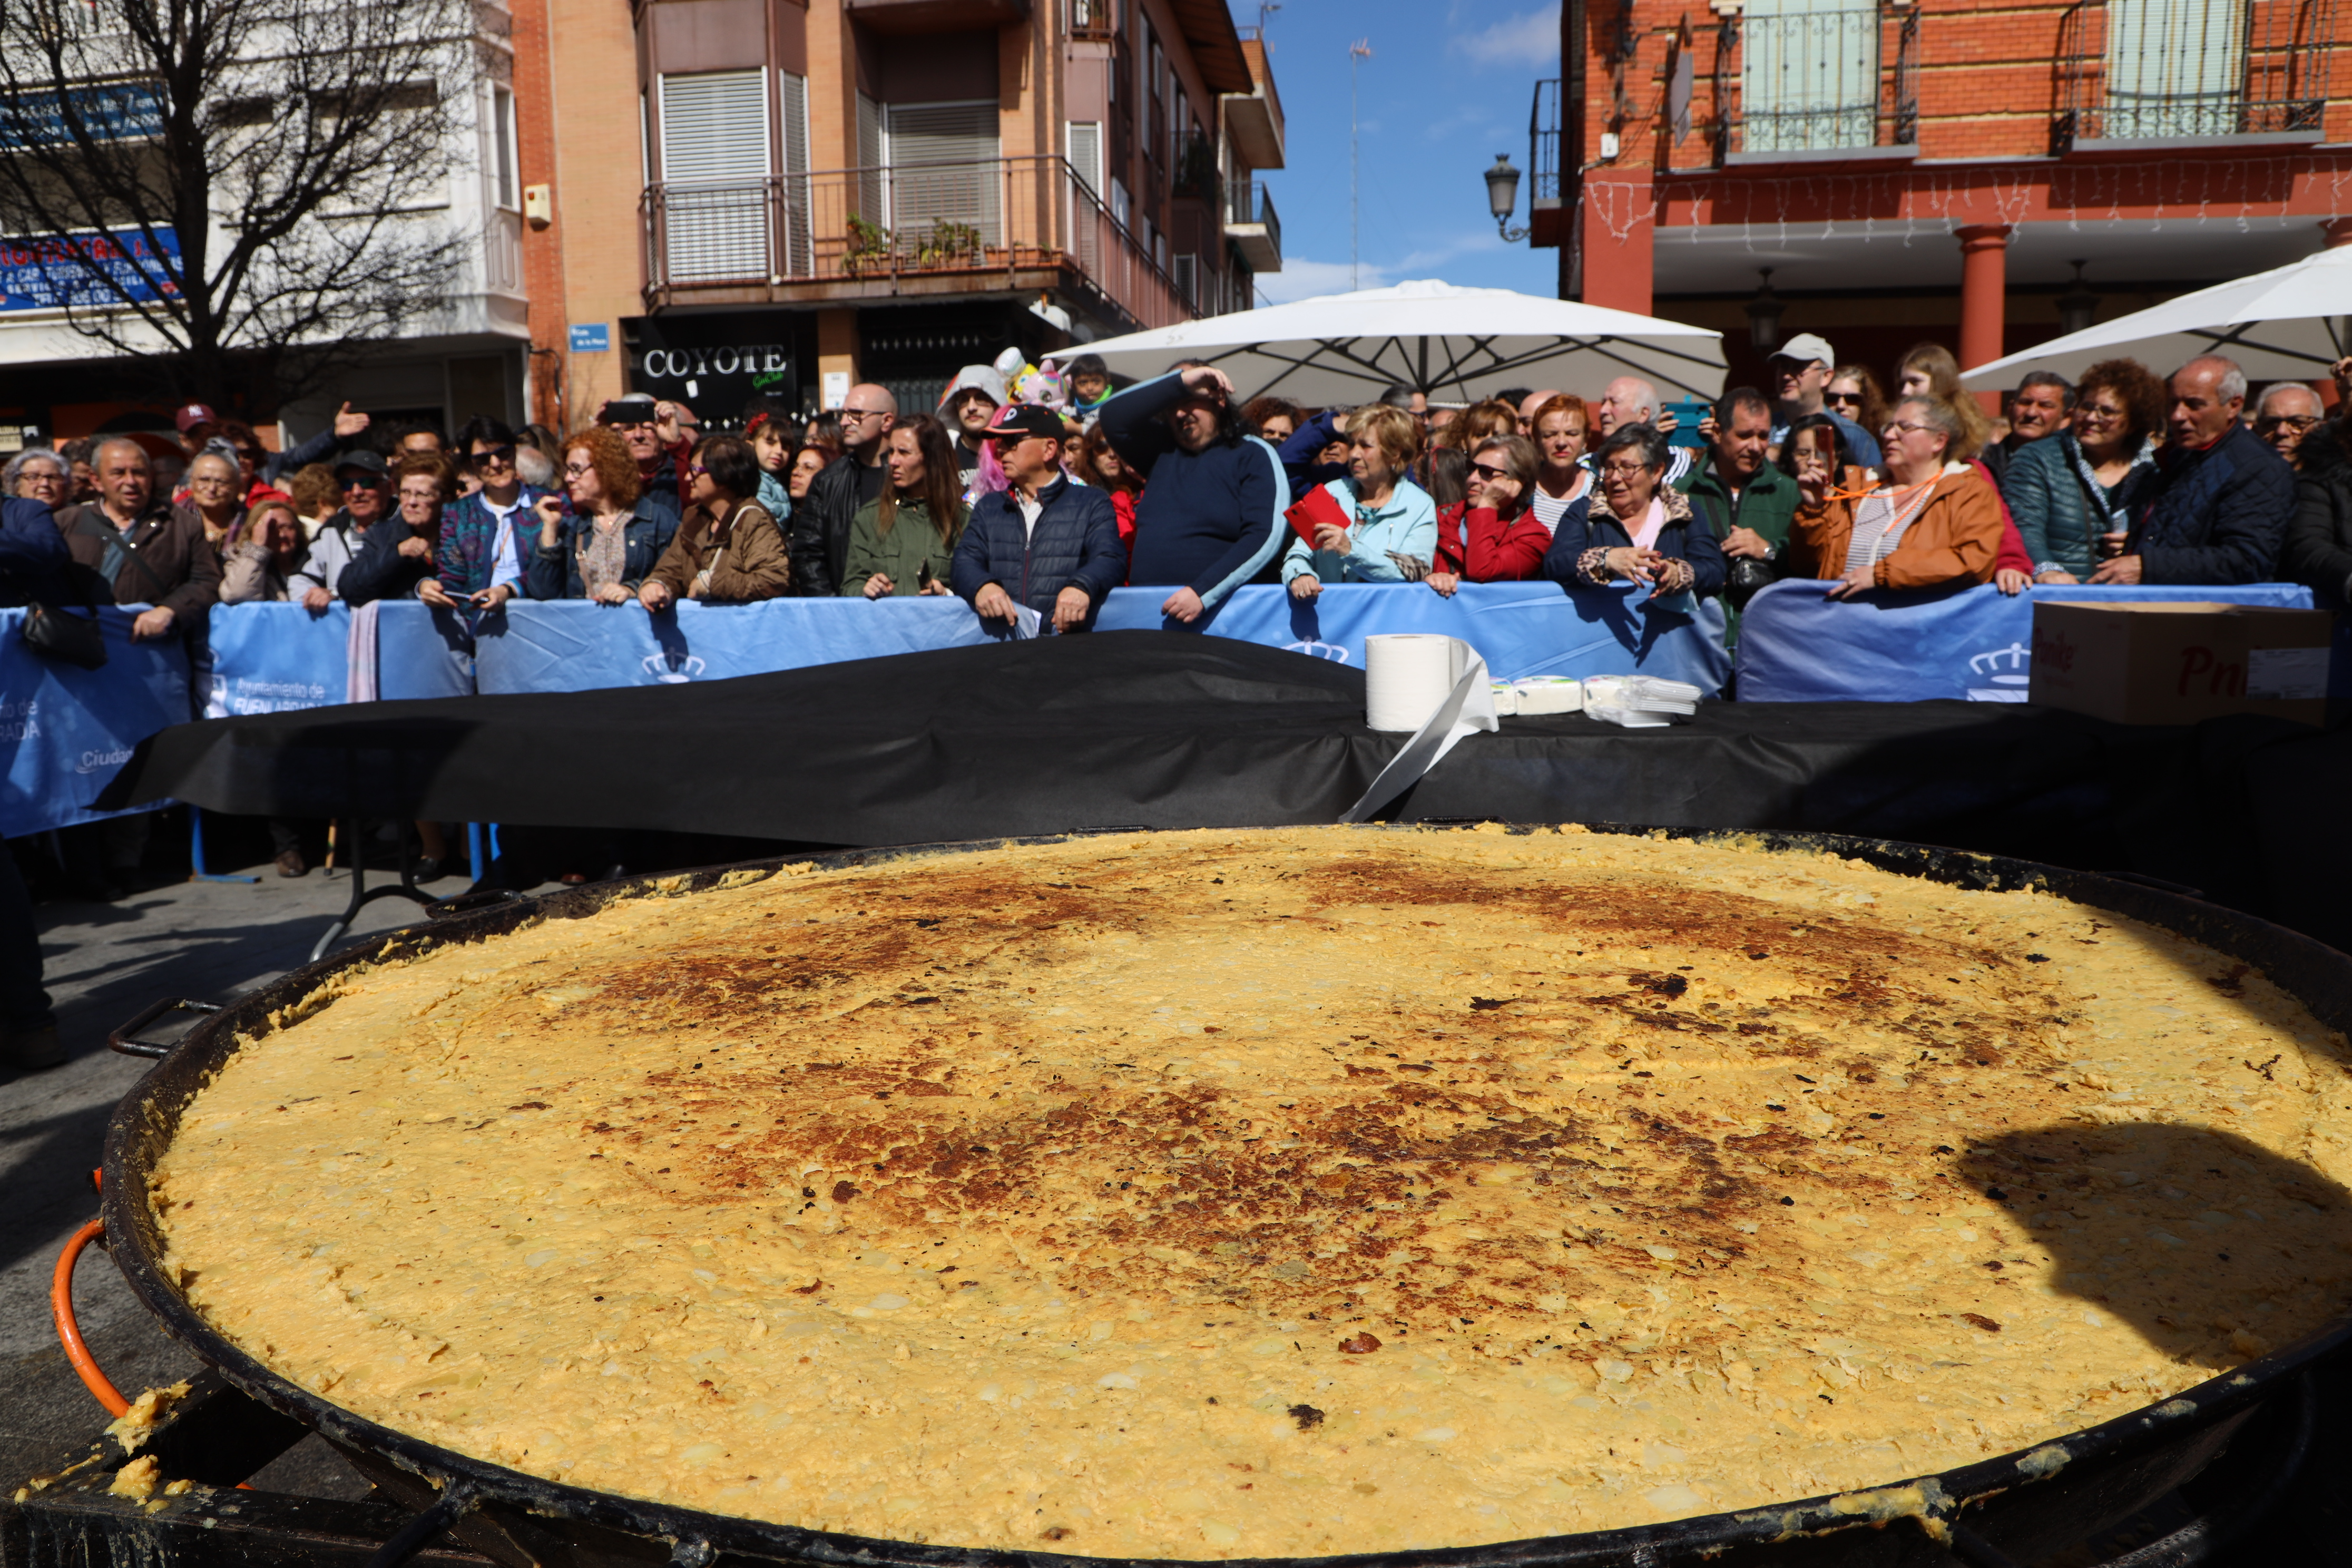 Descubre la vibrante agenda cultural de Fuenlabrada este fin de semana, con teatro, música, igualdad y ¡una tortilla gigante!